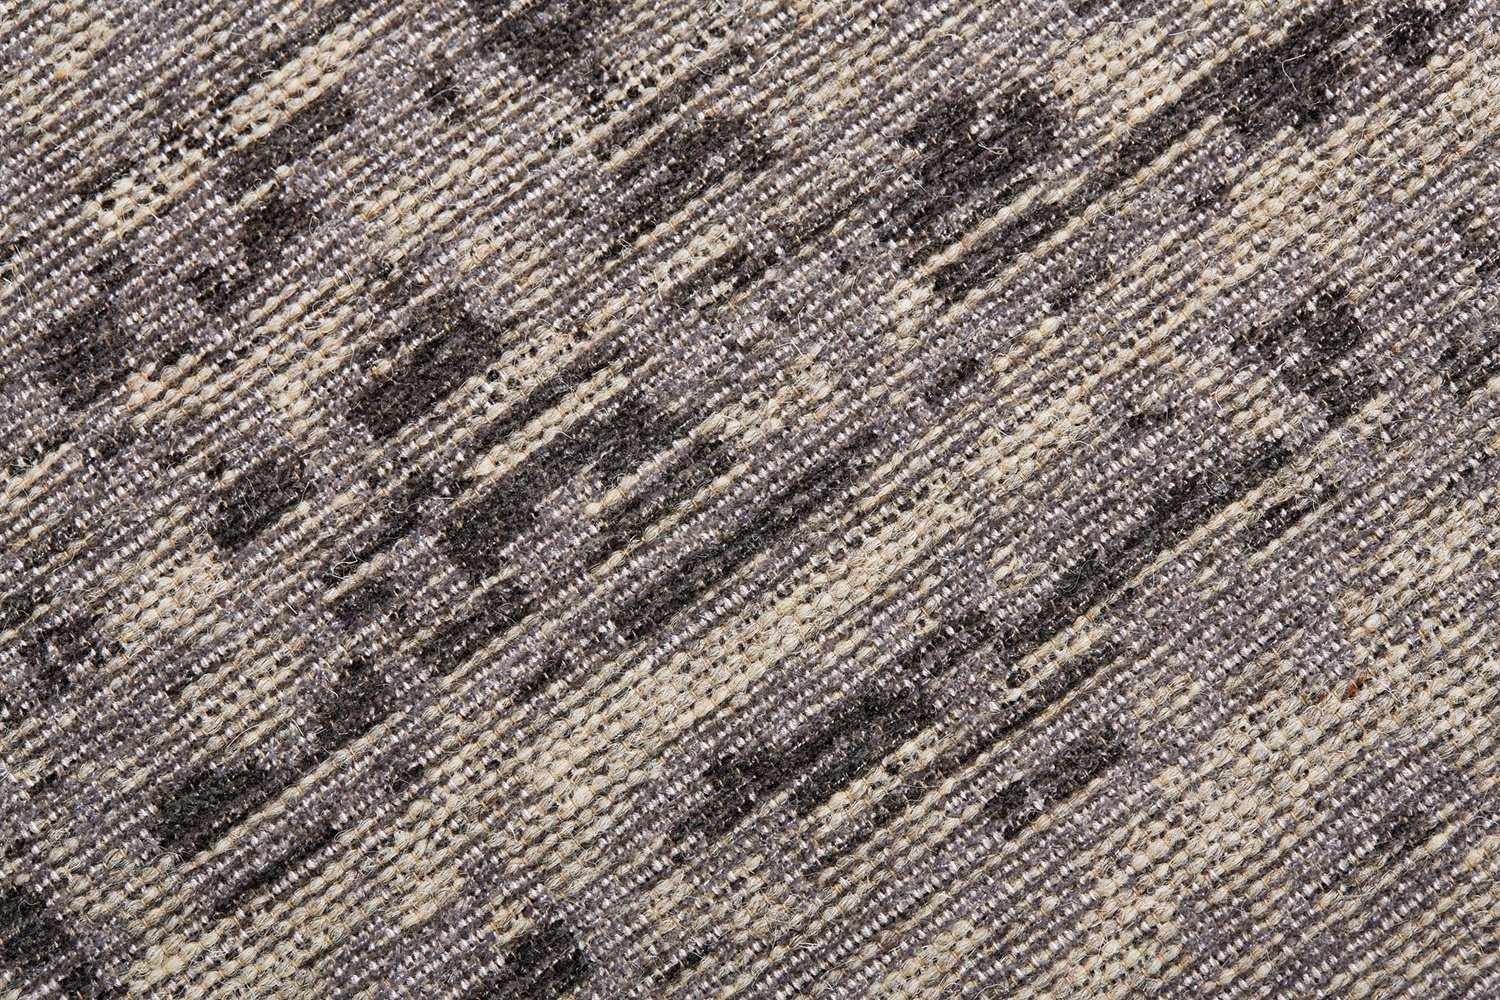 Jacquard-Teppich grau meliert, verschiedene Grautöne | Vartian